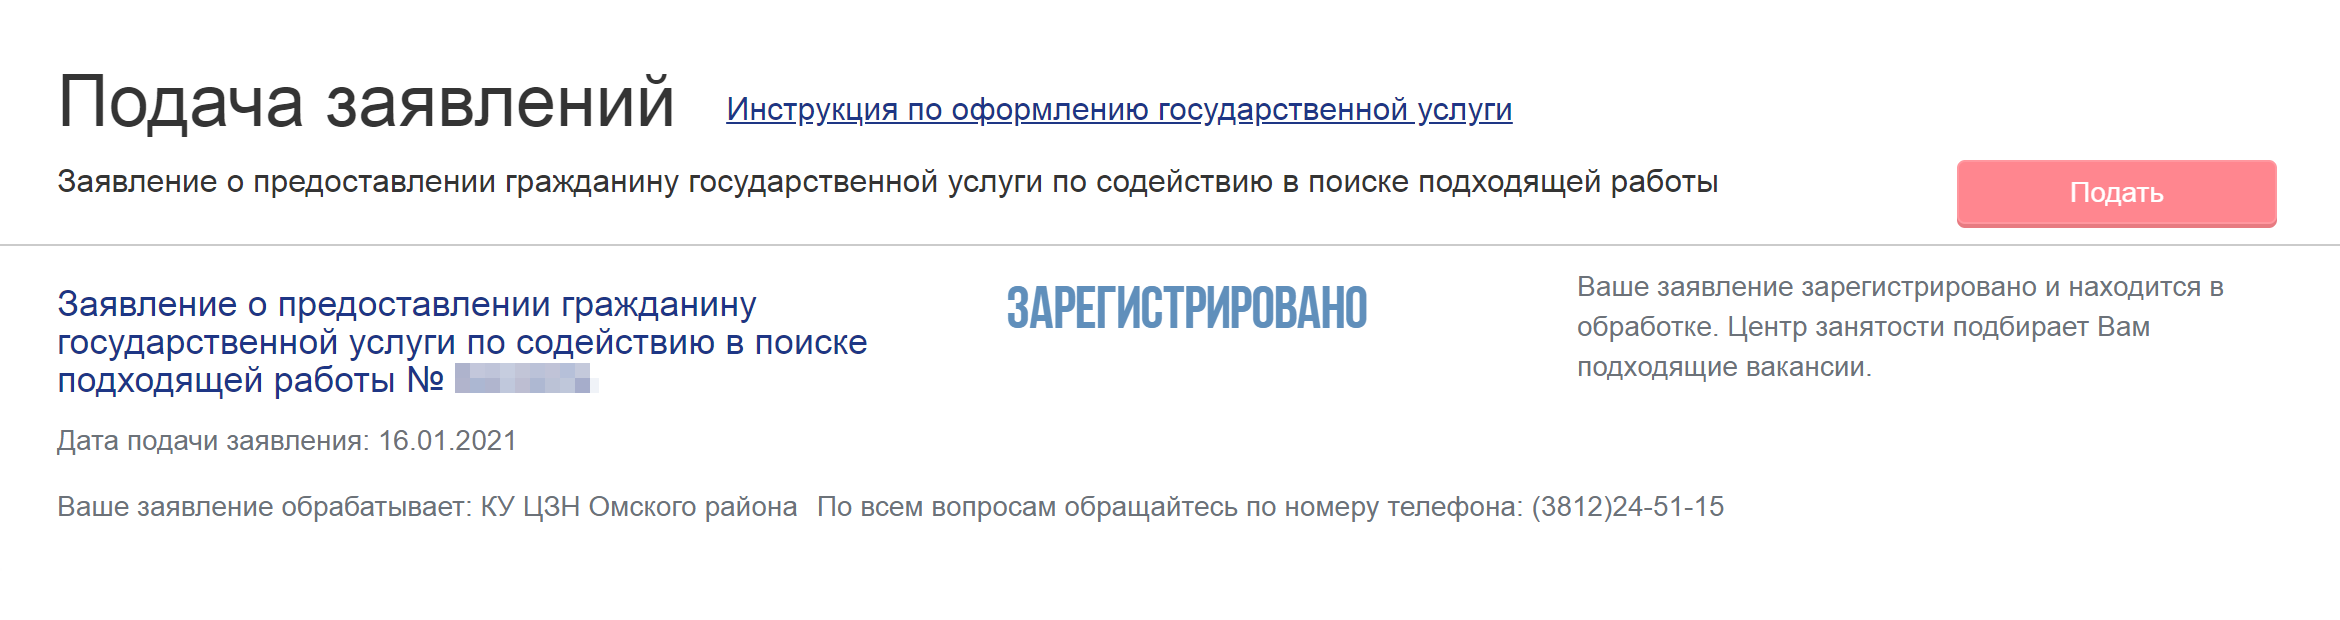 Если авторизуетесь на сайте «Работа в России» через госуслуги, увидите, что заявление зарегистрировано